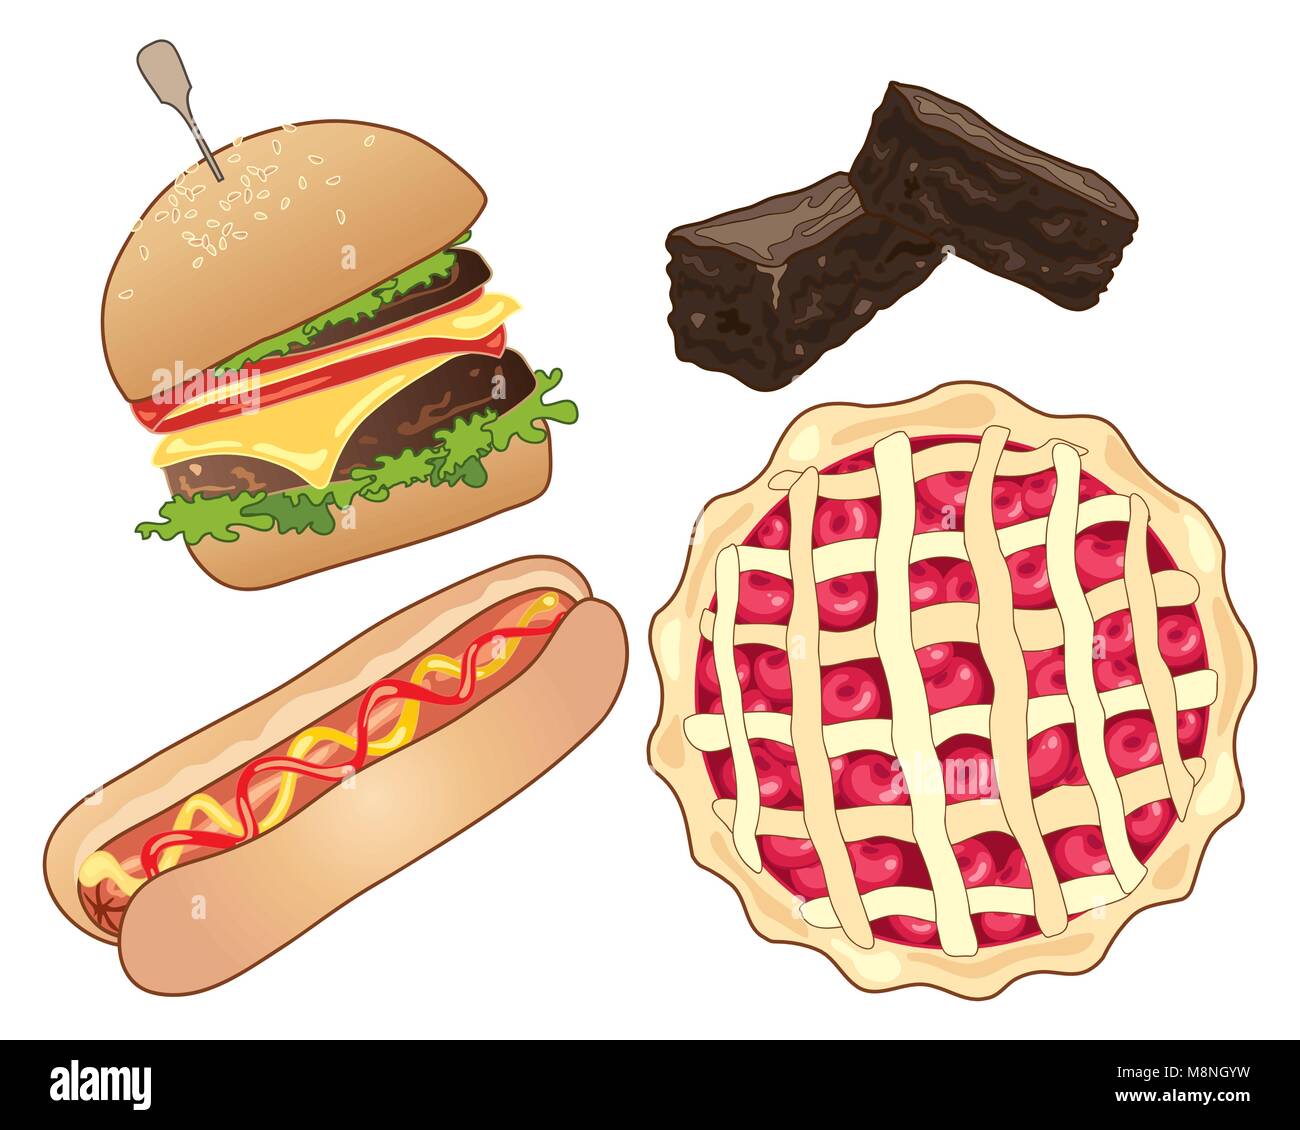 Un vecteur illustration en format eps 10 de restauration rapide américaine y compris un hamburger dans un petit pain a hot dog brownies au chocolat et cherry pie Illustration de Vecteur